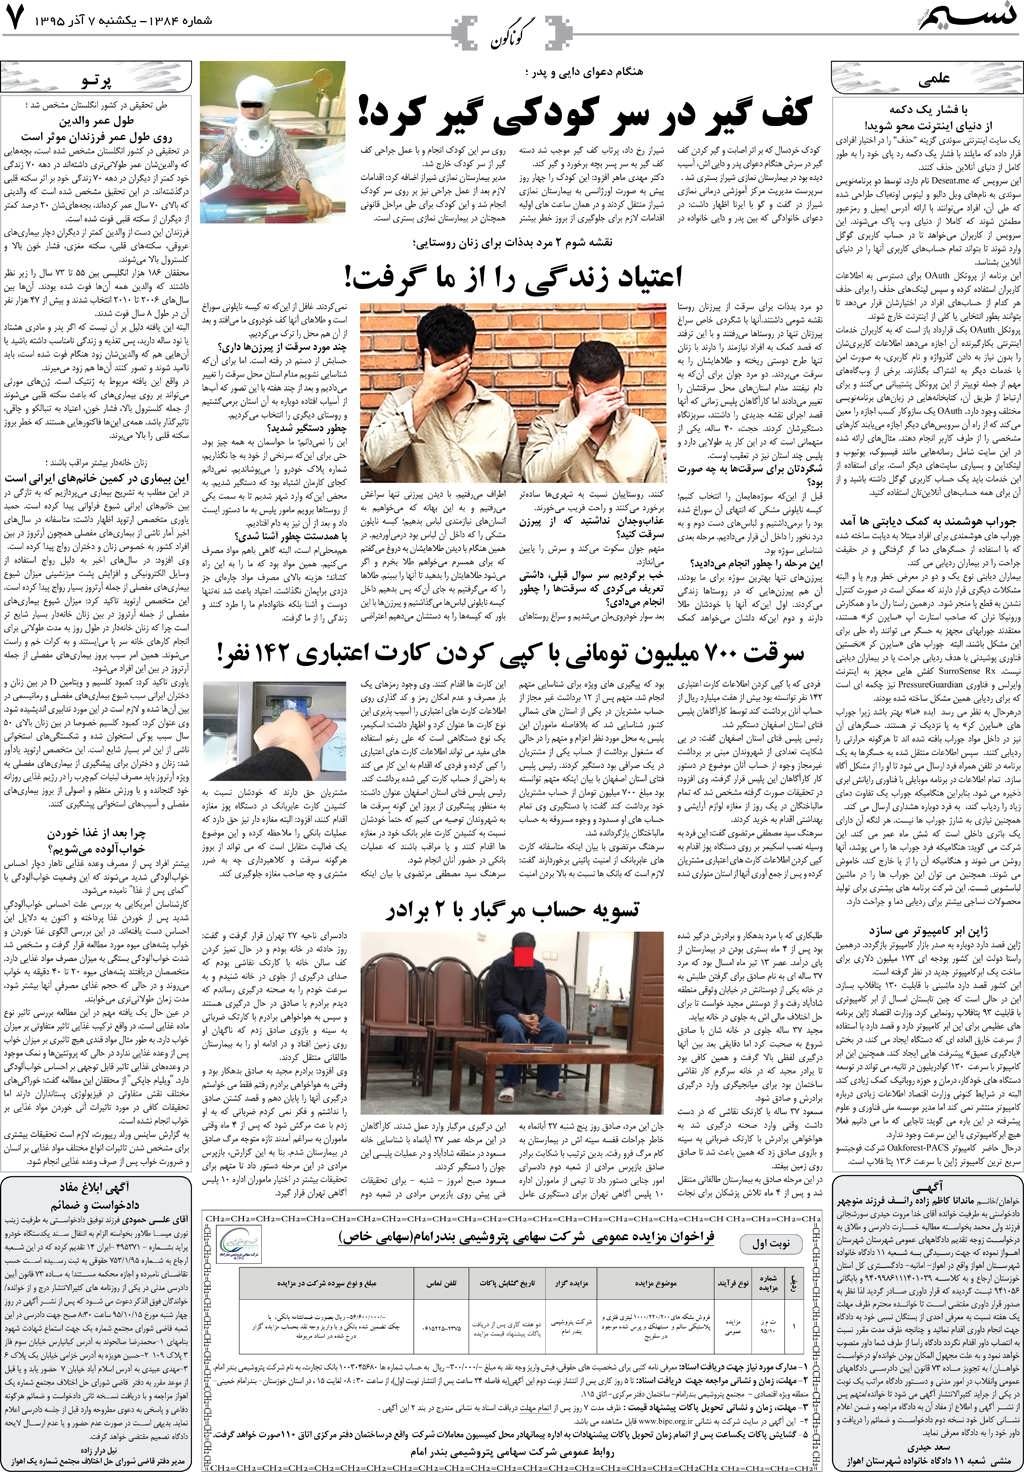 صفحه گوناگون روزنامه نسیم شماره 1384